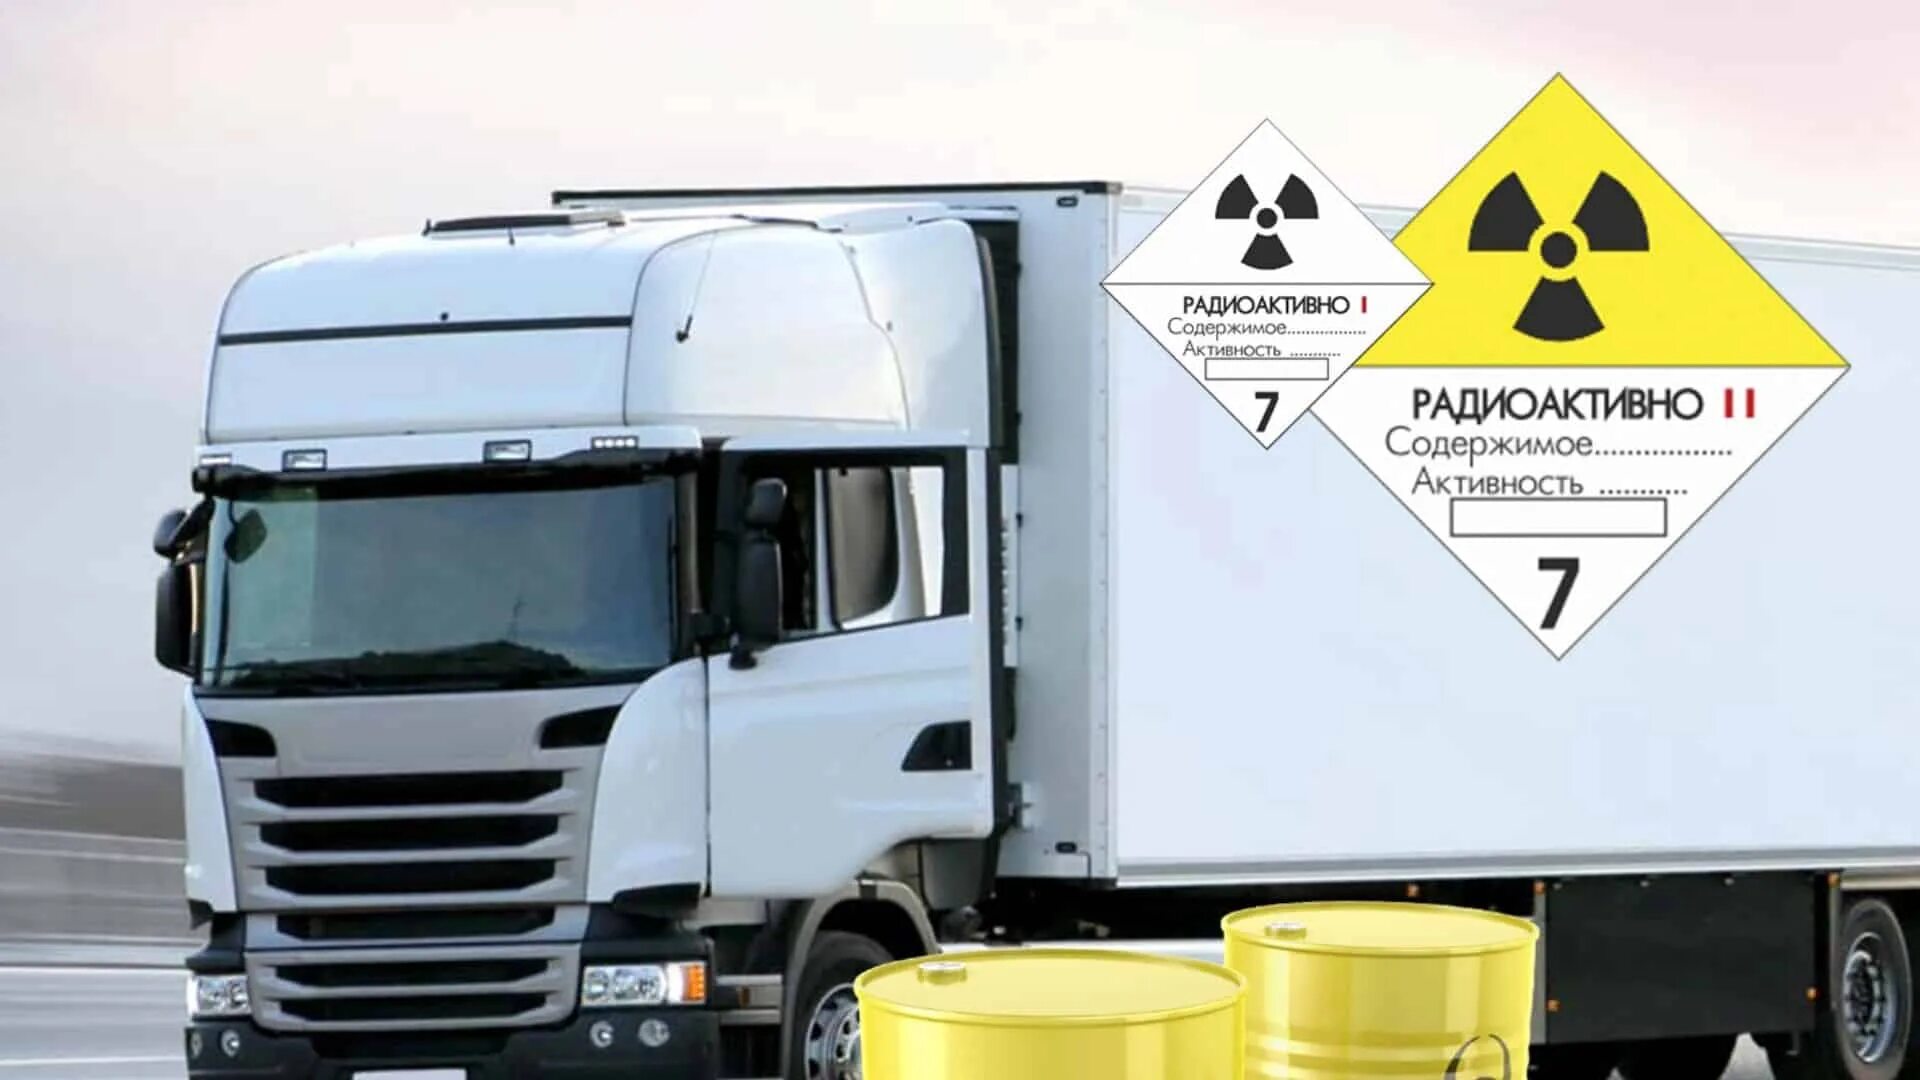 Опасный груз цена. Транспортировка радиоактивных материалов. Специализированный контейнер для опасных грузов. Машина для перевозки радиоактивных материалов. Опасный груз авто.